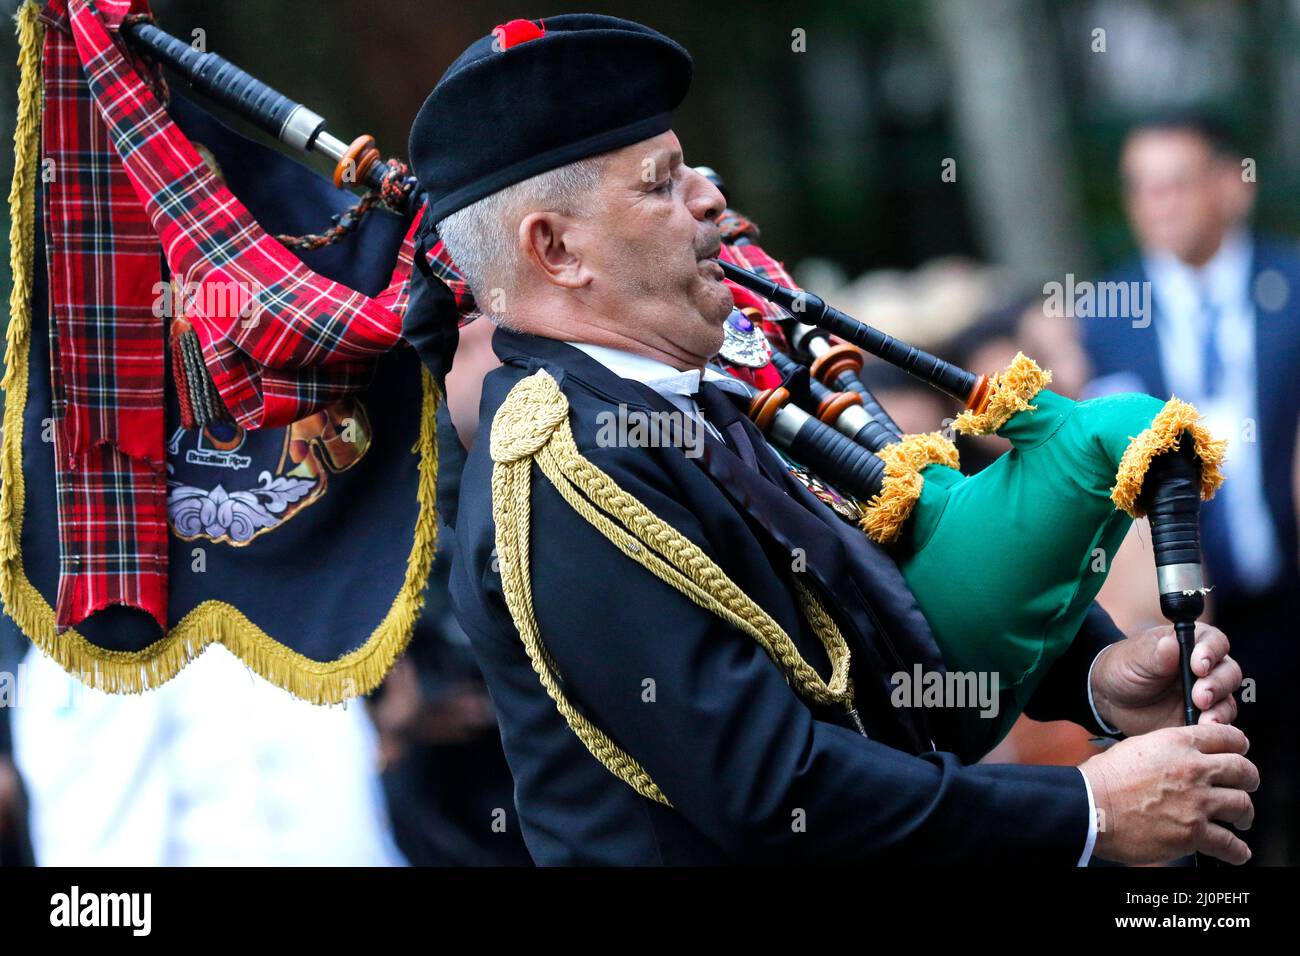 Cornemuse de cornemuse vêtue jouant des instruments de musique, typique de la tradition scotisch à la parade de rue Banque D'Images